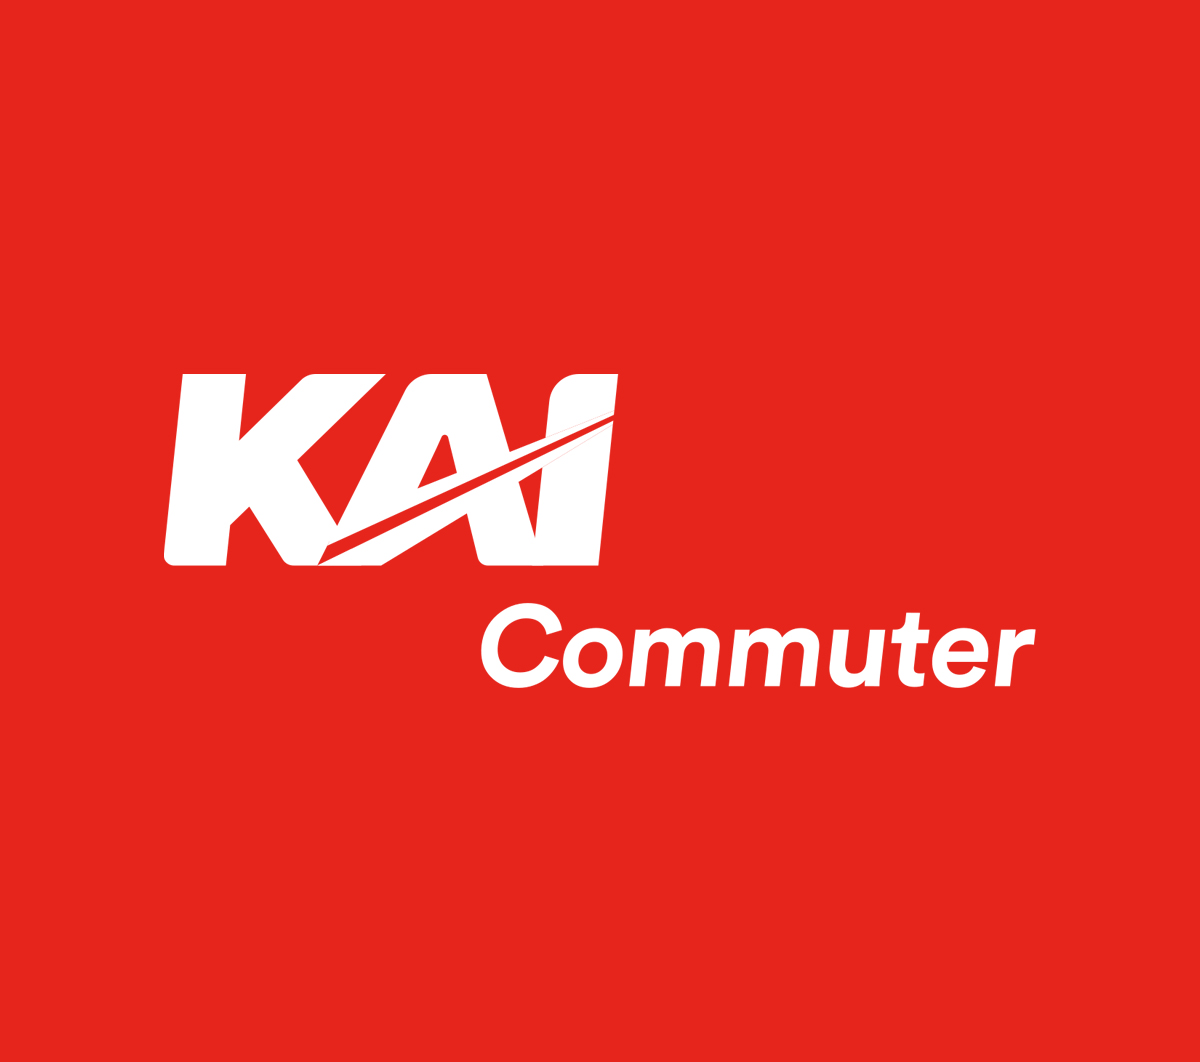 Volume Pengguna KRL Meningkat, KAI Commuter Ajak Pengguna Rencanakan Waktu Perjalanan Dengan KRL